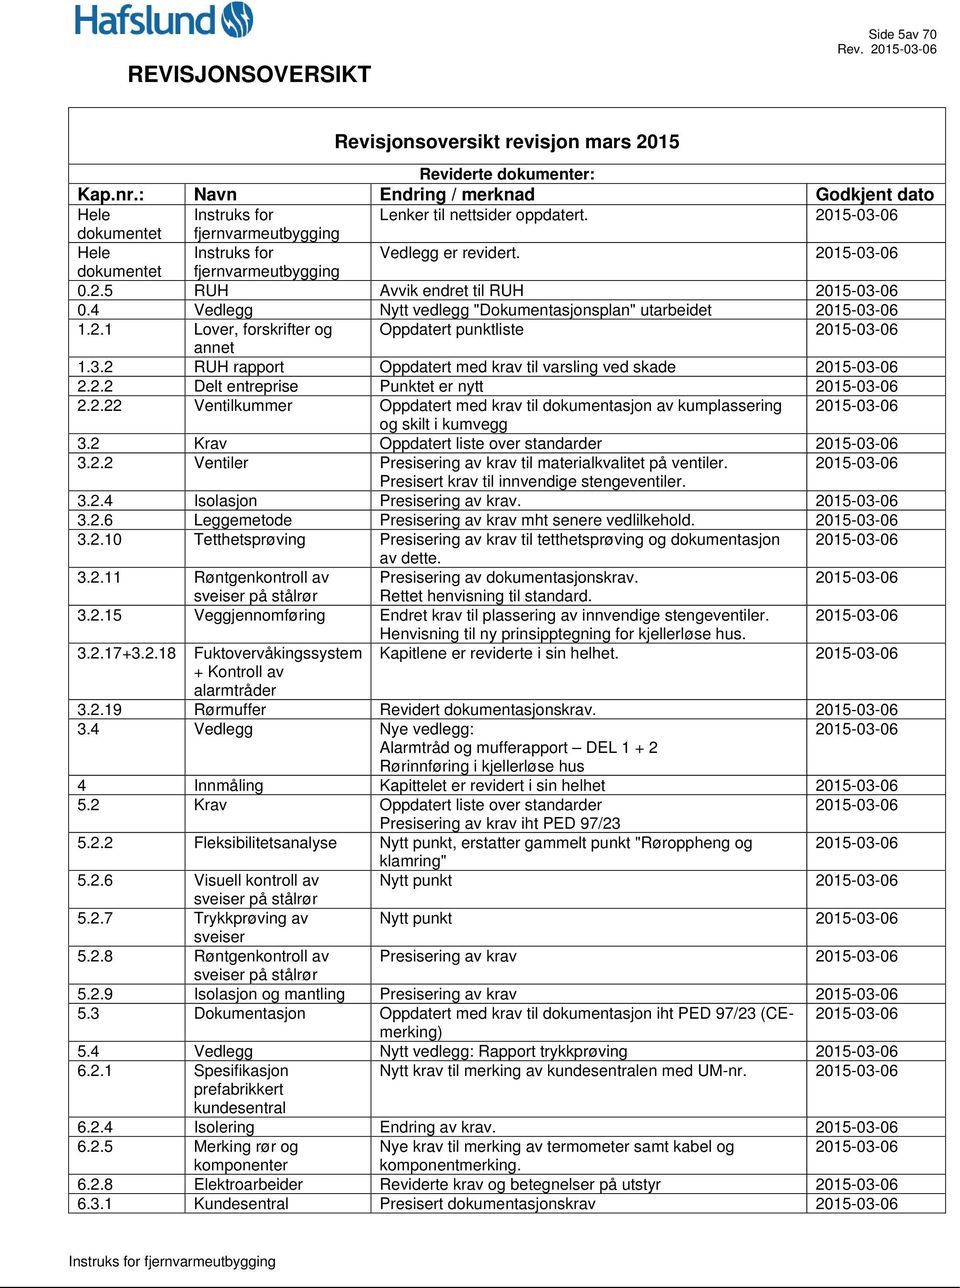 4 Vedlegg Nytt vedlegg "Dokumentasjonsplan" utarbeidet 2015-03-06 1.2.1 Lover, forskrifter og Oppdatert punktliste 2015-03-06 annet 1.3.2 RUH rapport Oppdatert med krav til varsling ved skade 2015-03-06 2.